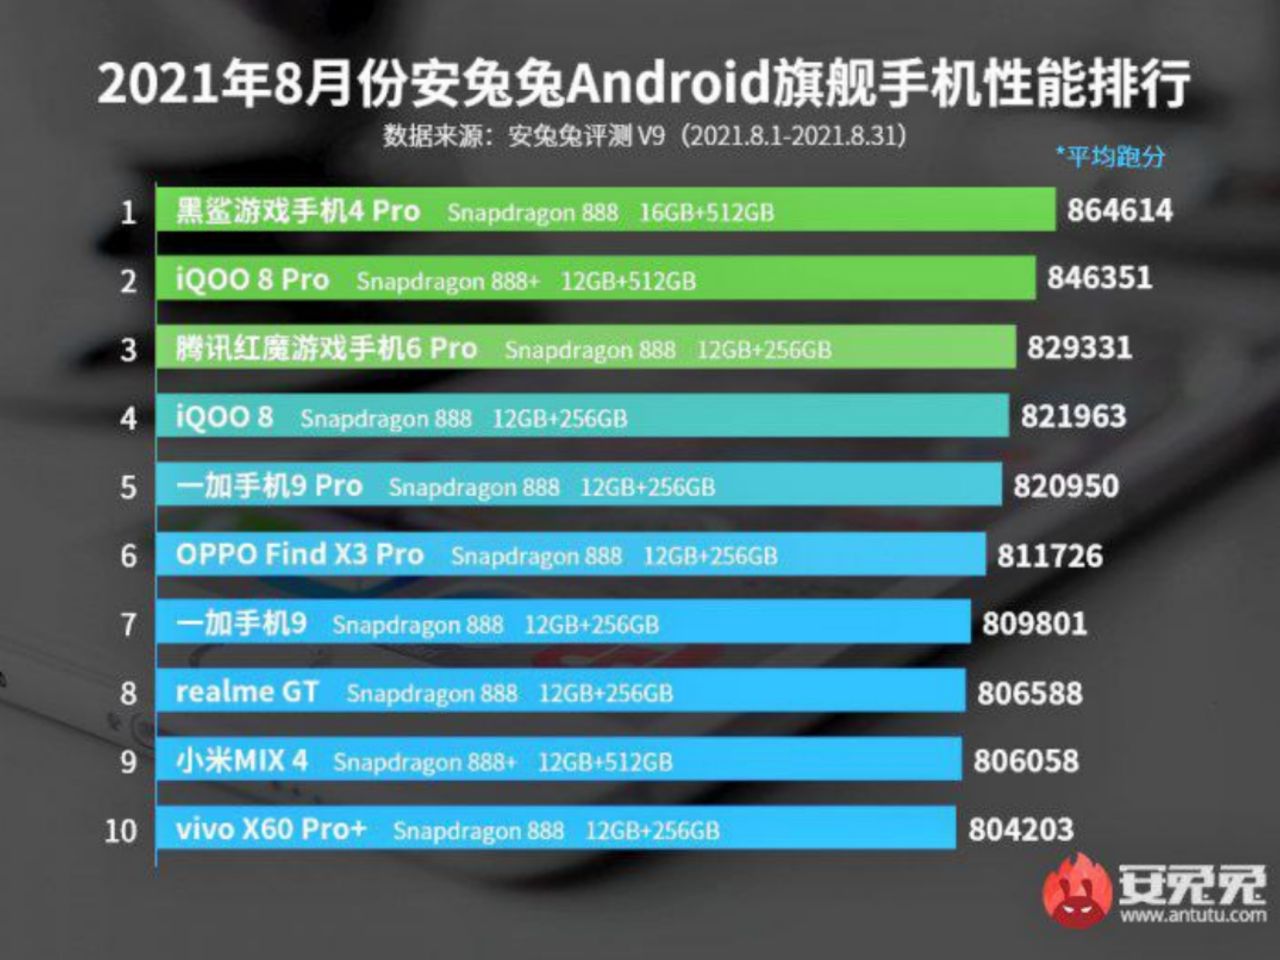 لیست بالاترین امتیاز AnTuTu در چین